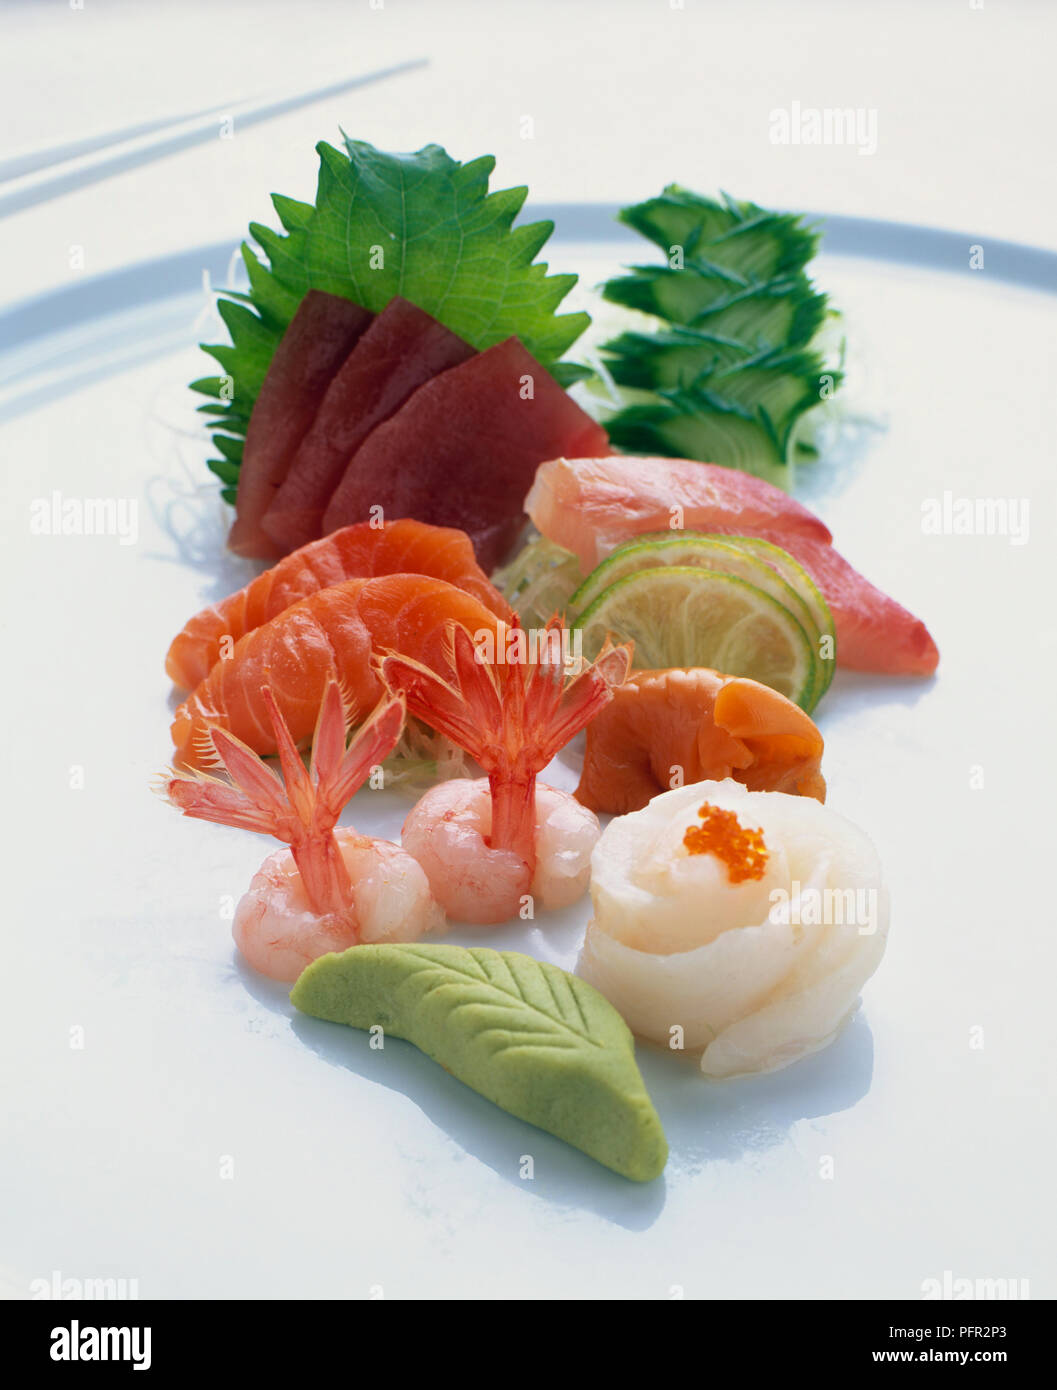 Sashimi au wasabi et gingembre mariné servi sur assiette blanche, close-up Banque D'Images